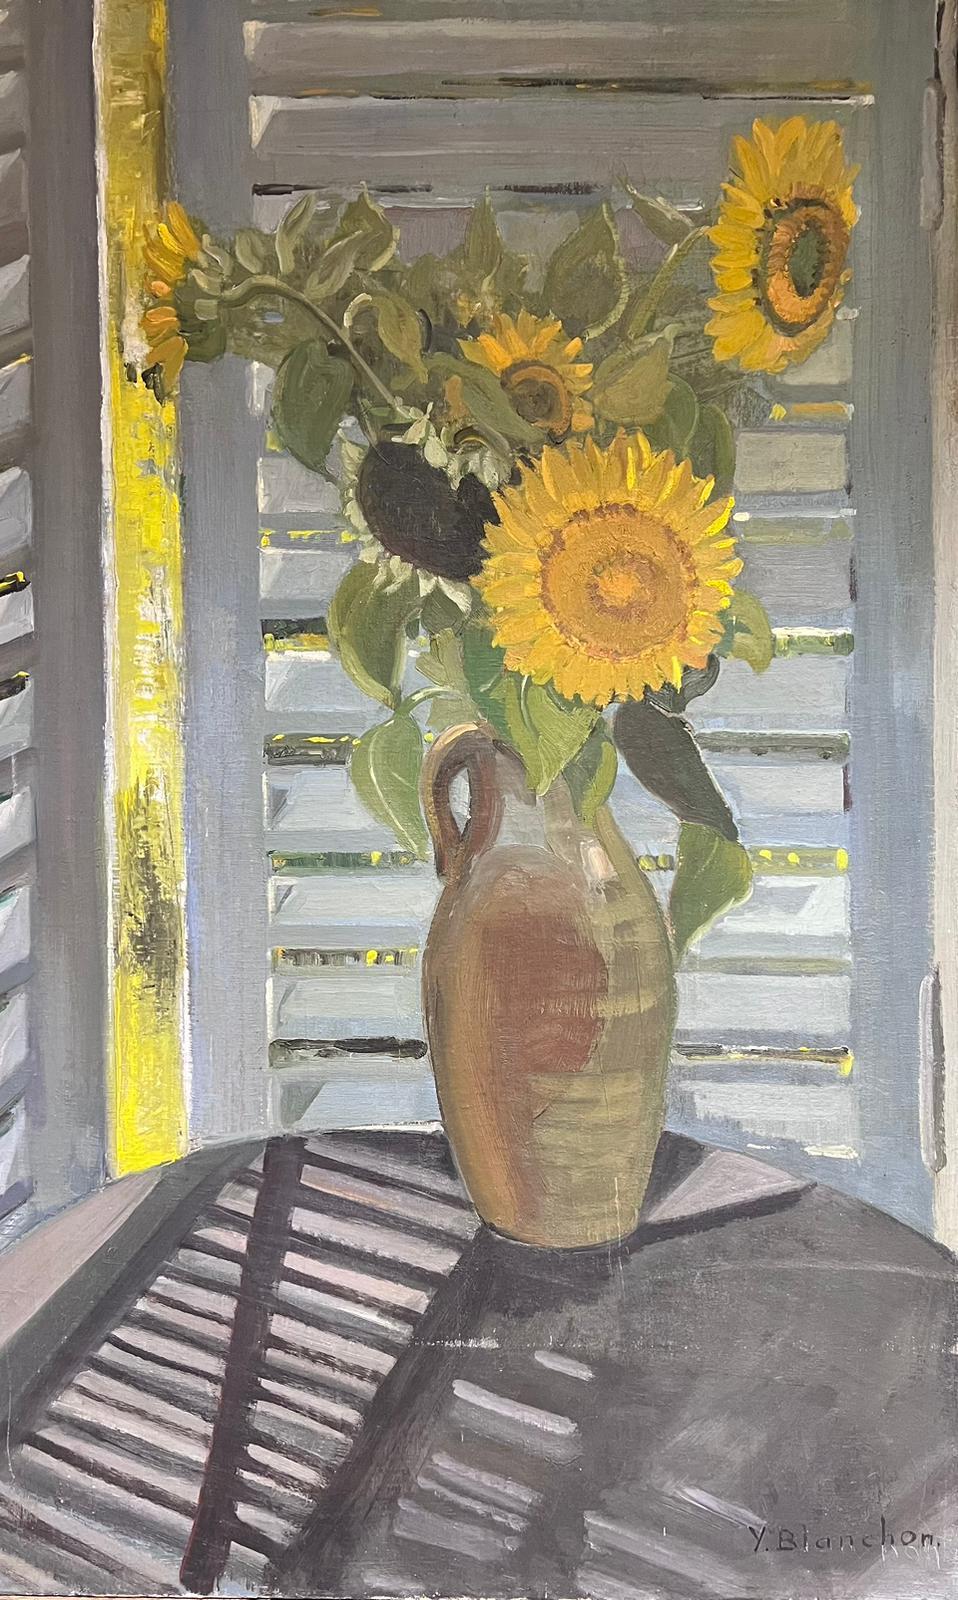 Grand vase français des années 1930, signé Sunflowers in, scène de fenêtre intérieure